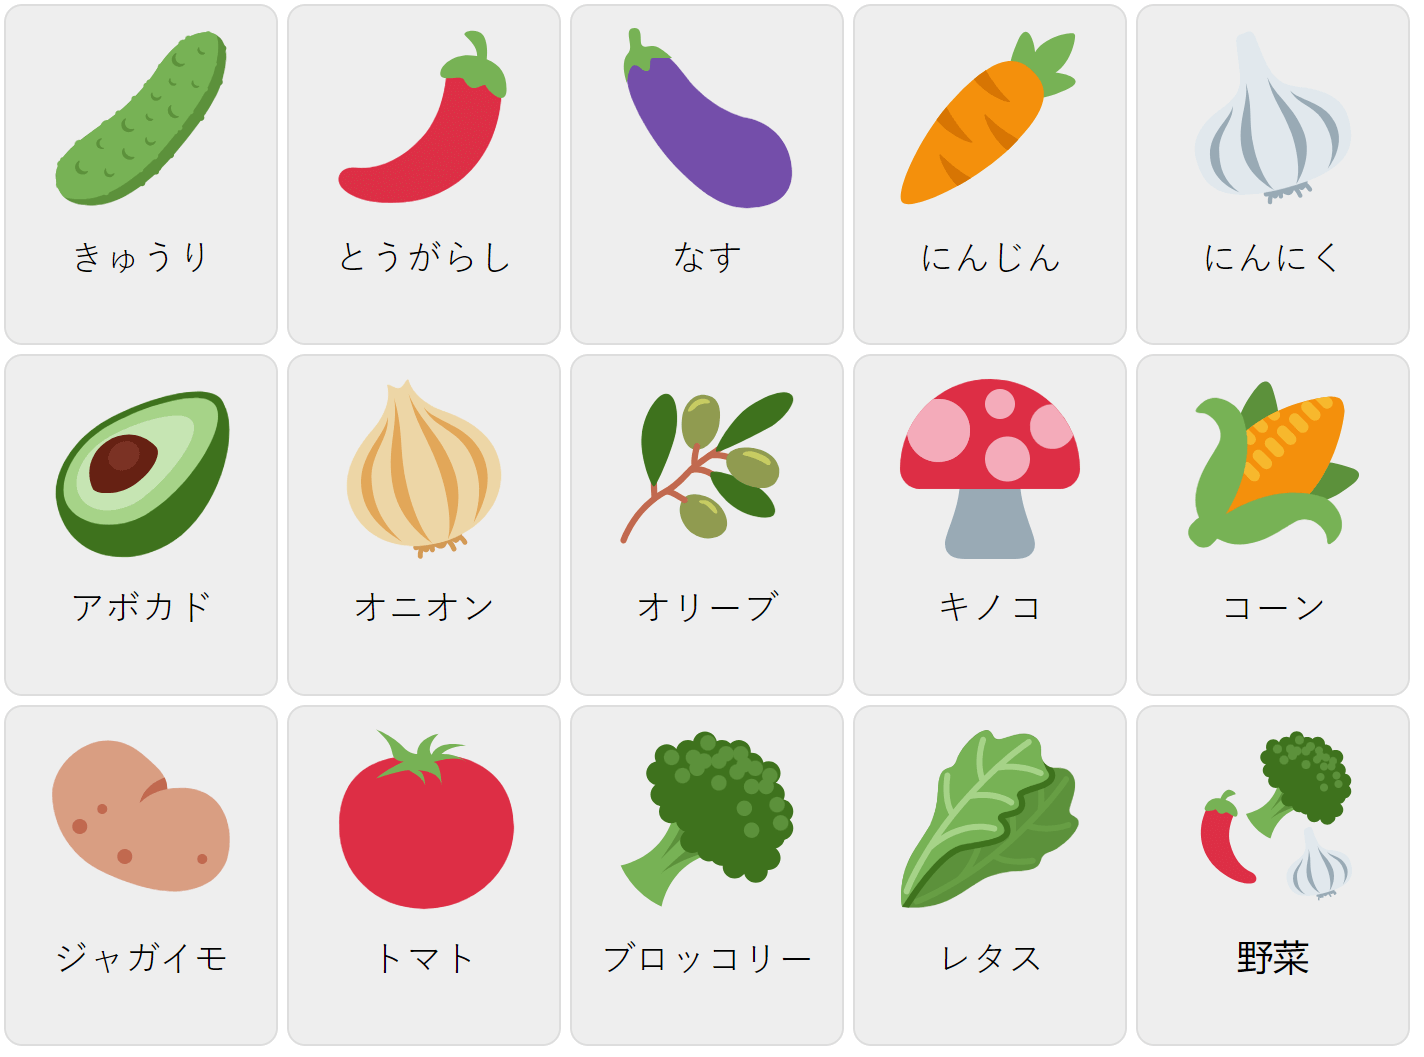 Овощи на японском языке